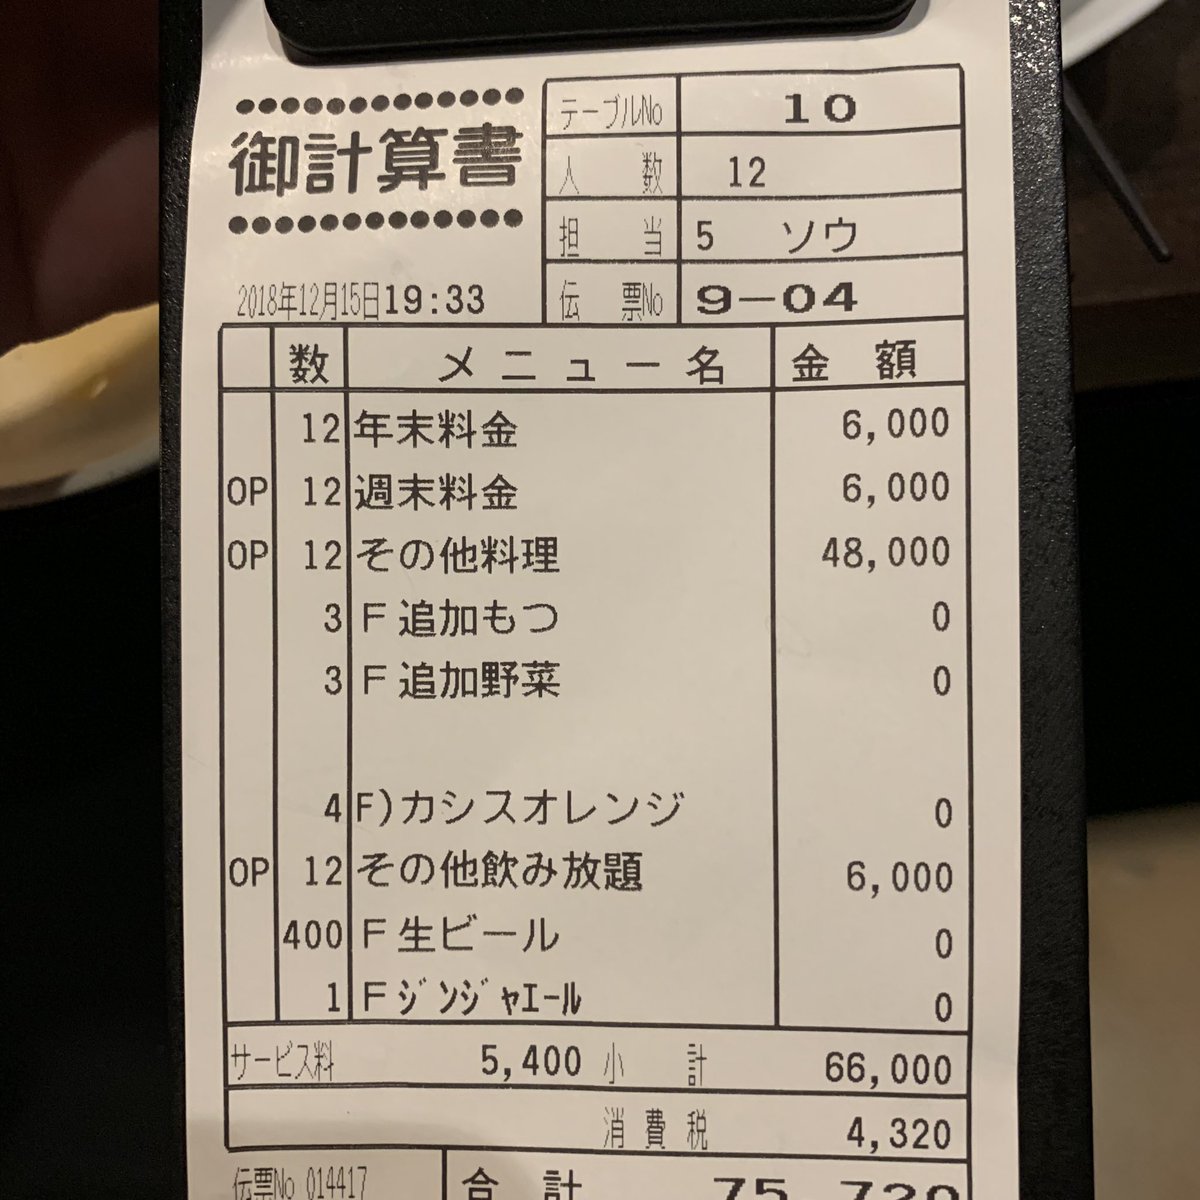 食べログは星１つの嵐 予約した時と店名が違う 歌舞伎町のプチぼったくり居酒屋で忘年会をしてみた Togetter